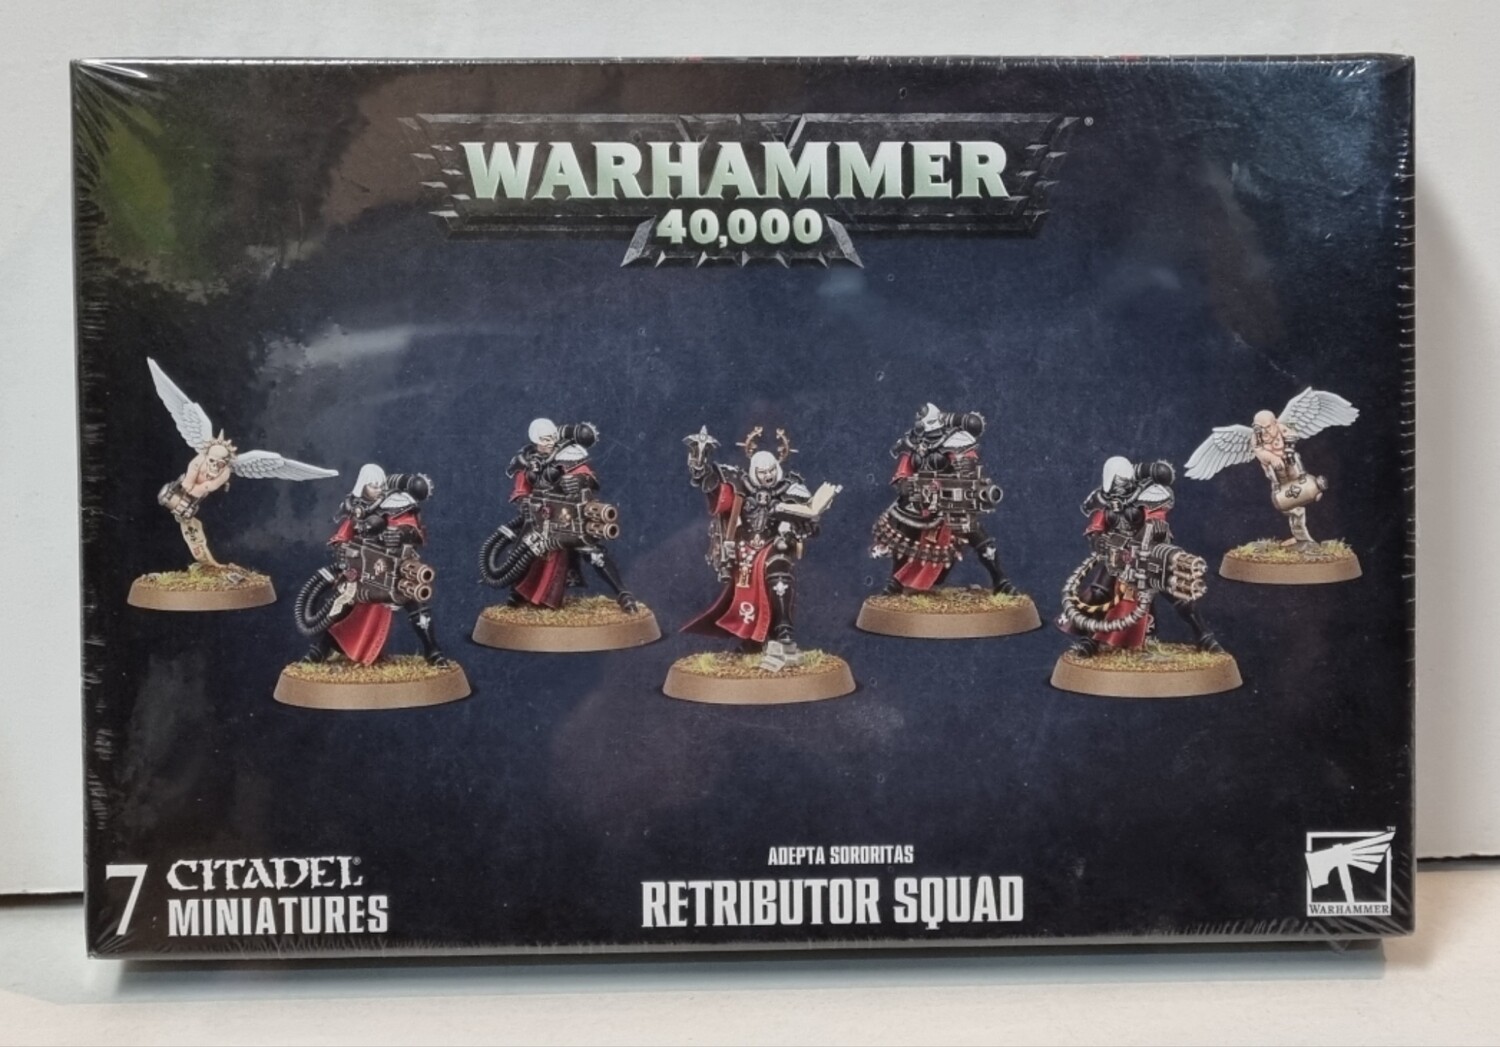 Warhammer, 40k, 52-25, Adepta Sororitas: Retributor Squad